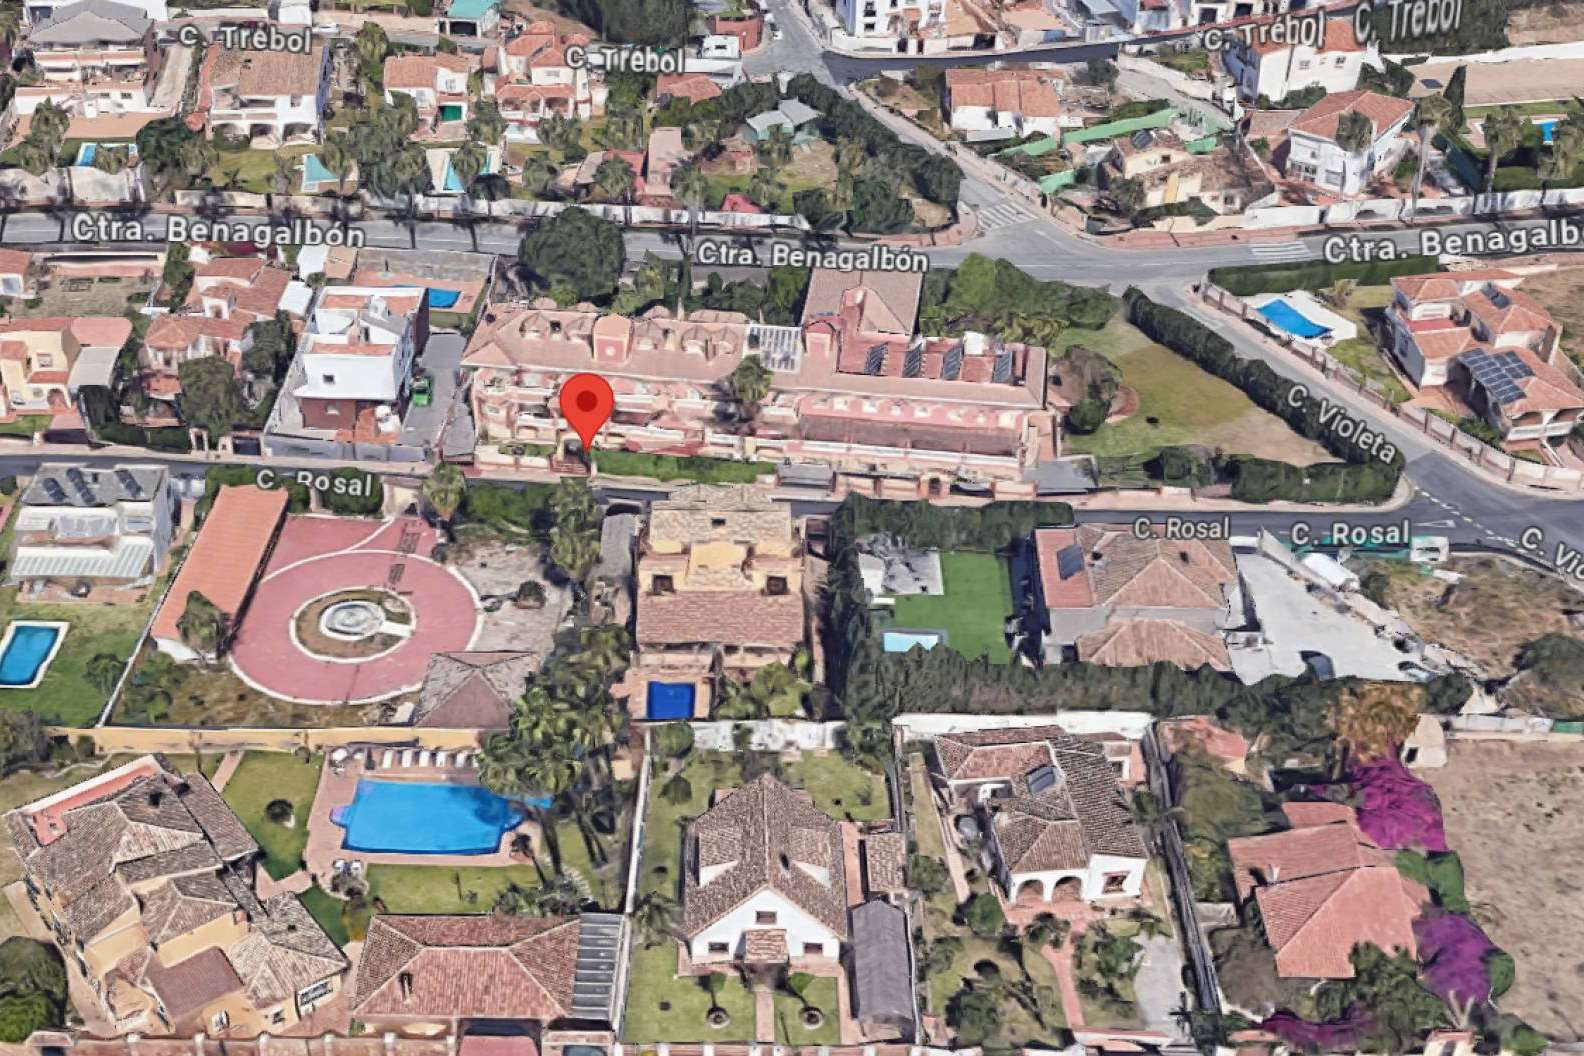  Se subasta un centro de la tercera edad en Málaga valorado en un millón de euros 